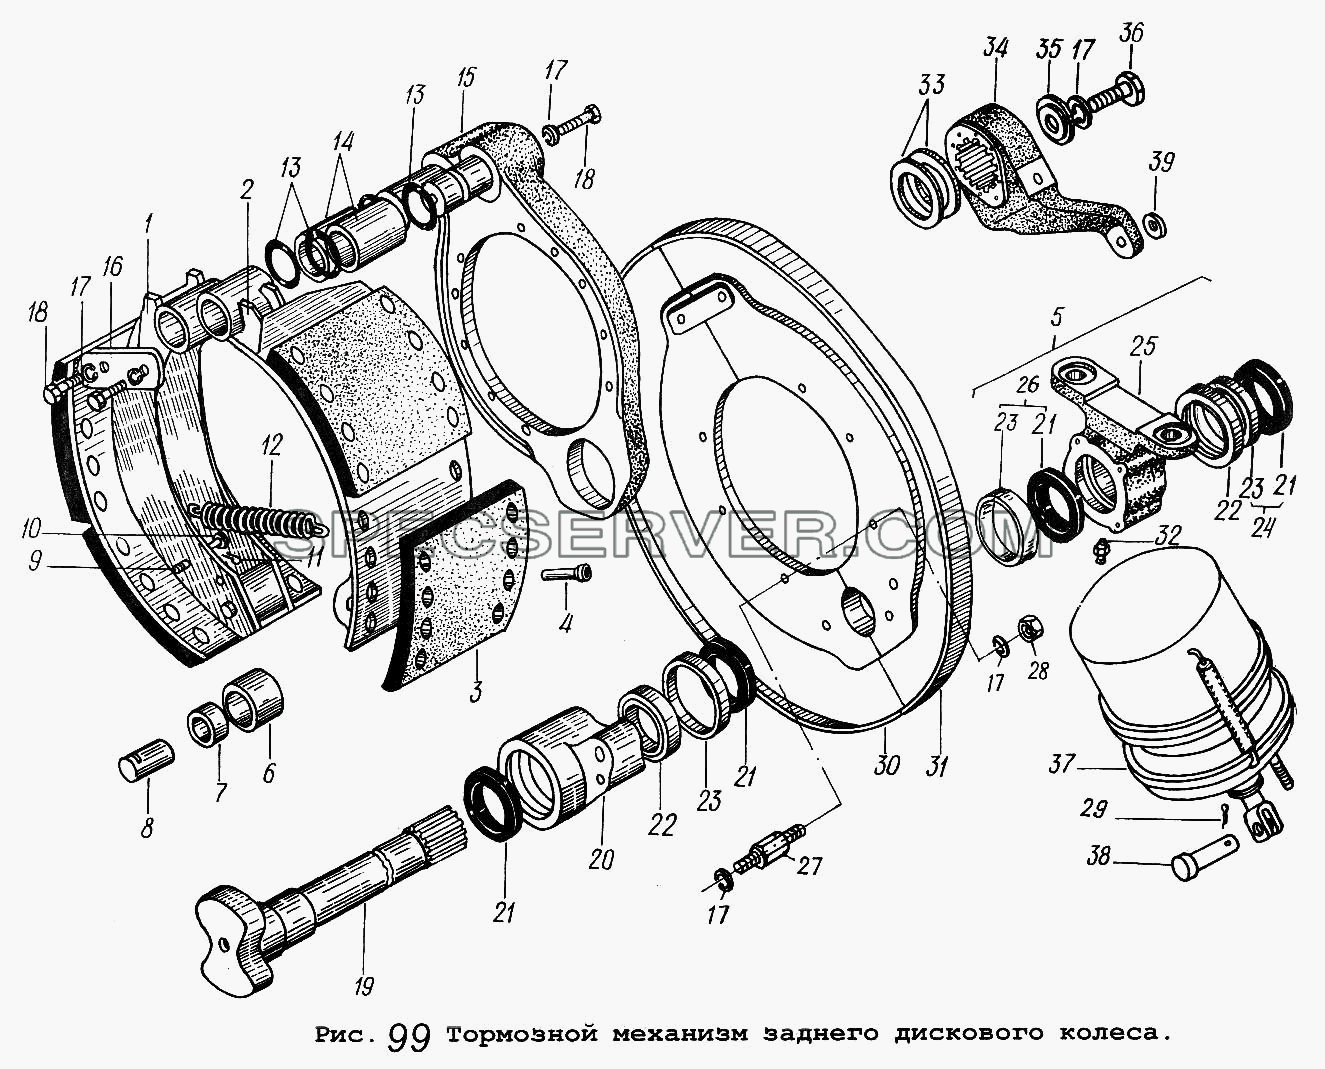 Тормозной механизм заднего дискового колеса для МАЗ-5551 (список запасных частей)